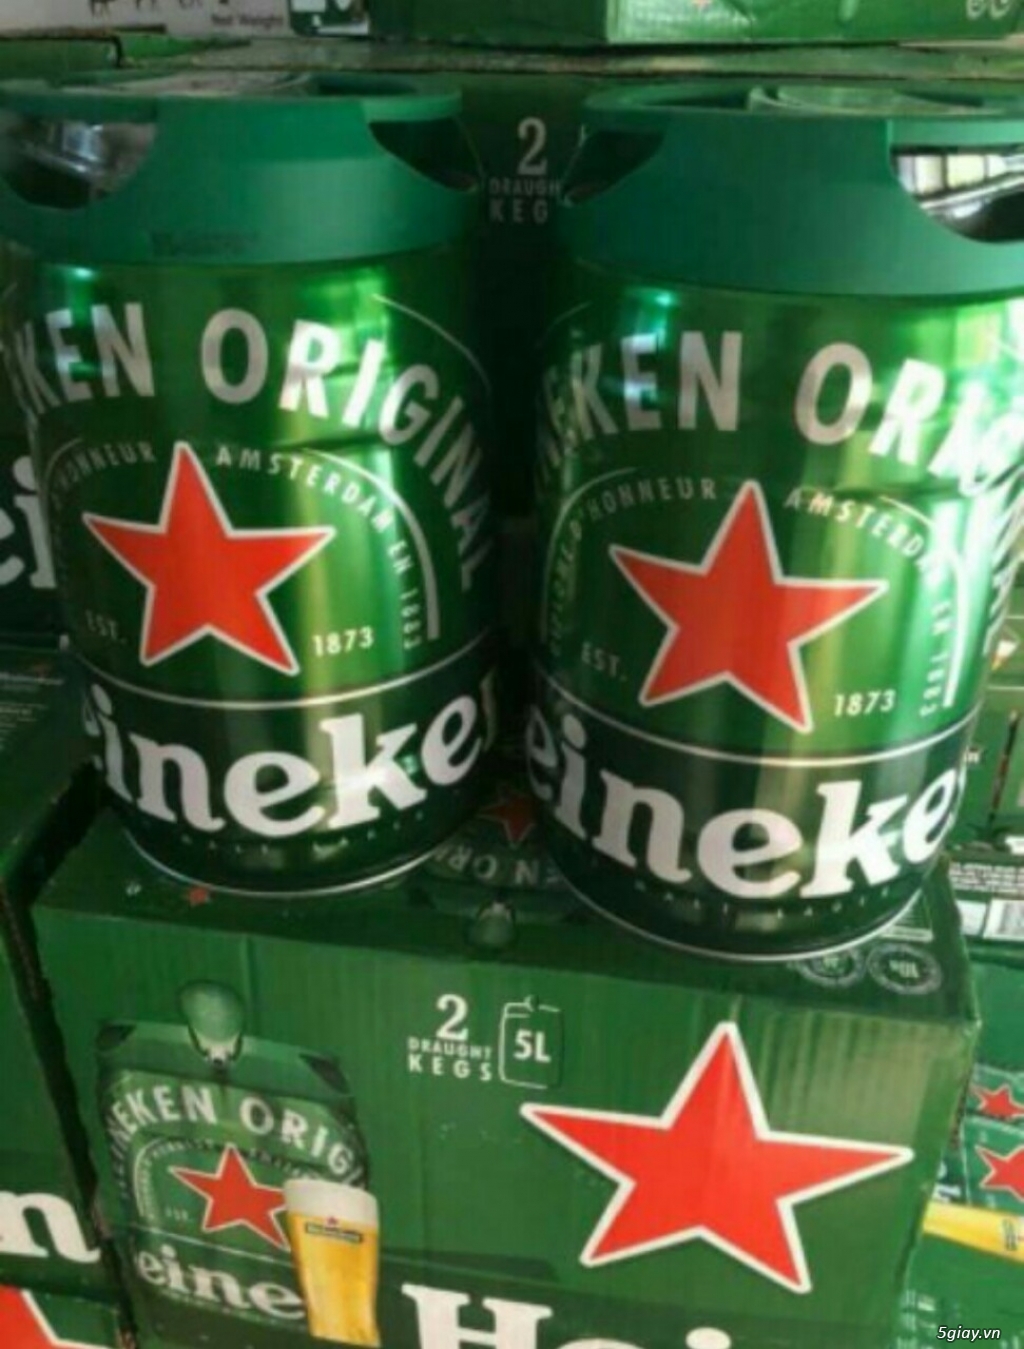 Bia Heineken bom 5 lít nhập khẩu Hà Lan mừng xuân 2019 vui vẻ và hạnh phúc tràn đầy. - 2